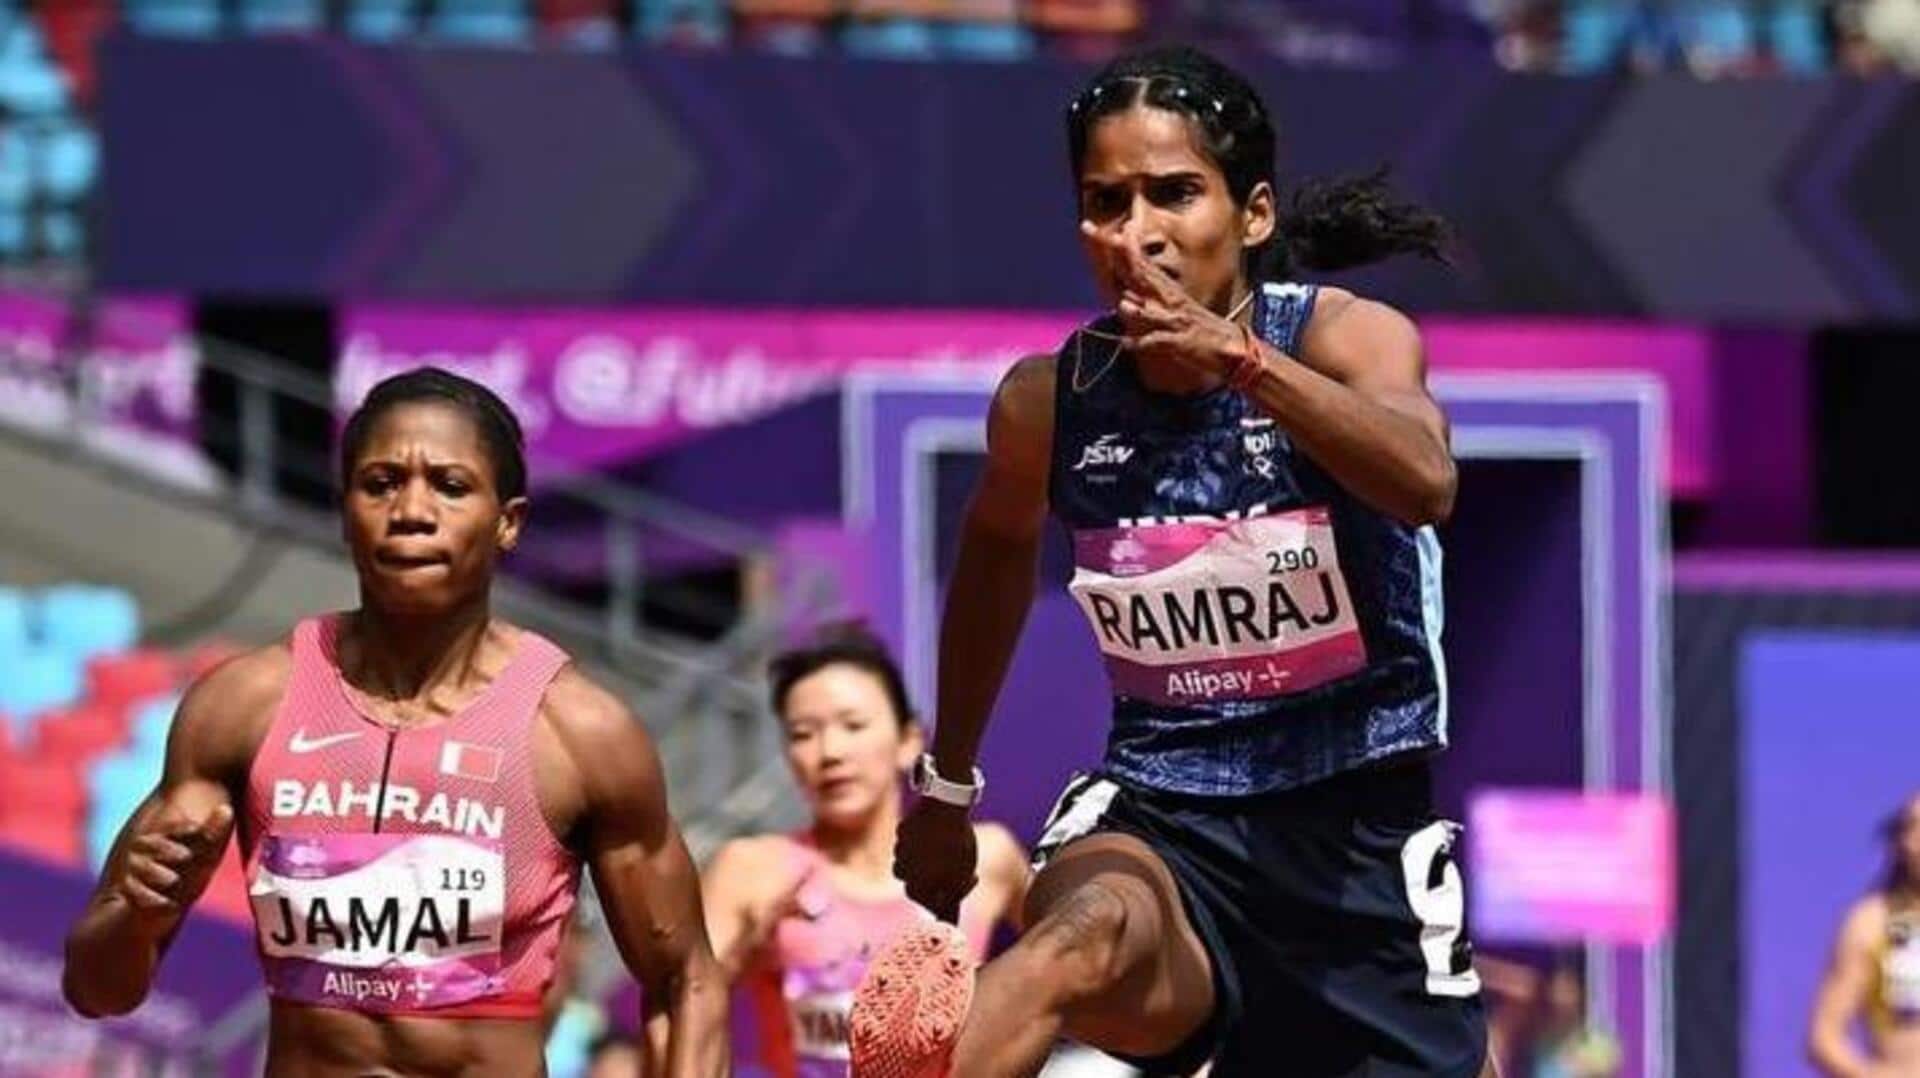 एशियाई खेल: विथ्या रामराज ने 400 मीटर बाधा दौड़ में जीता कांस्य पदक